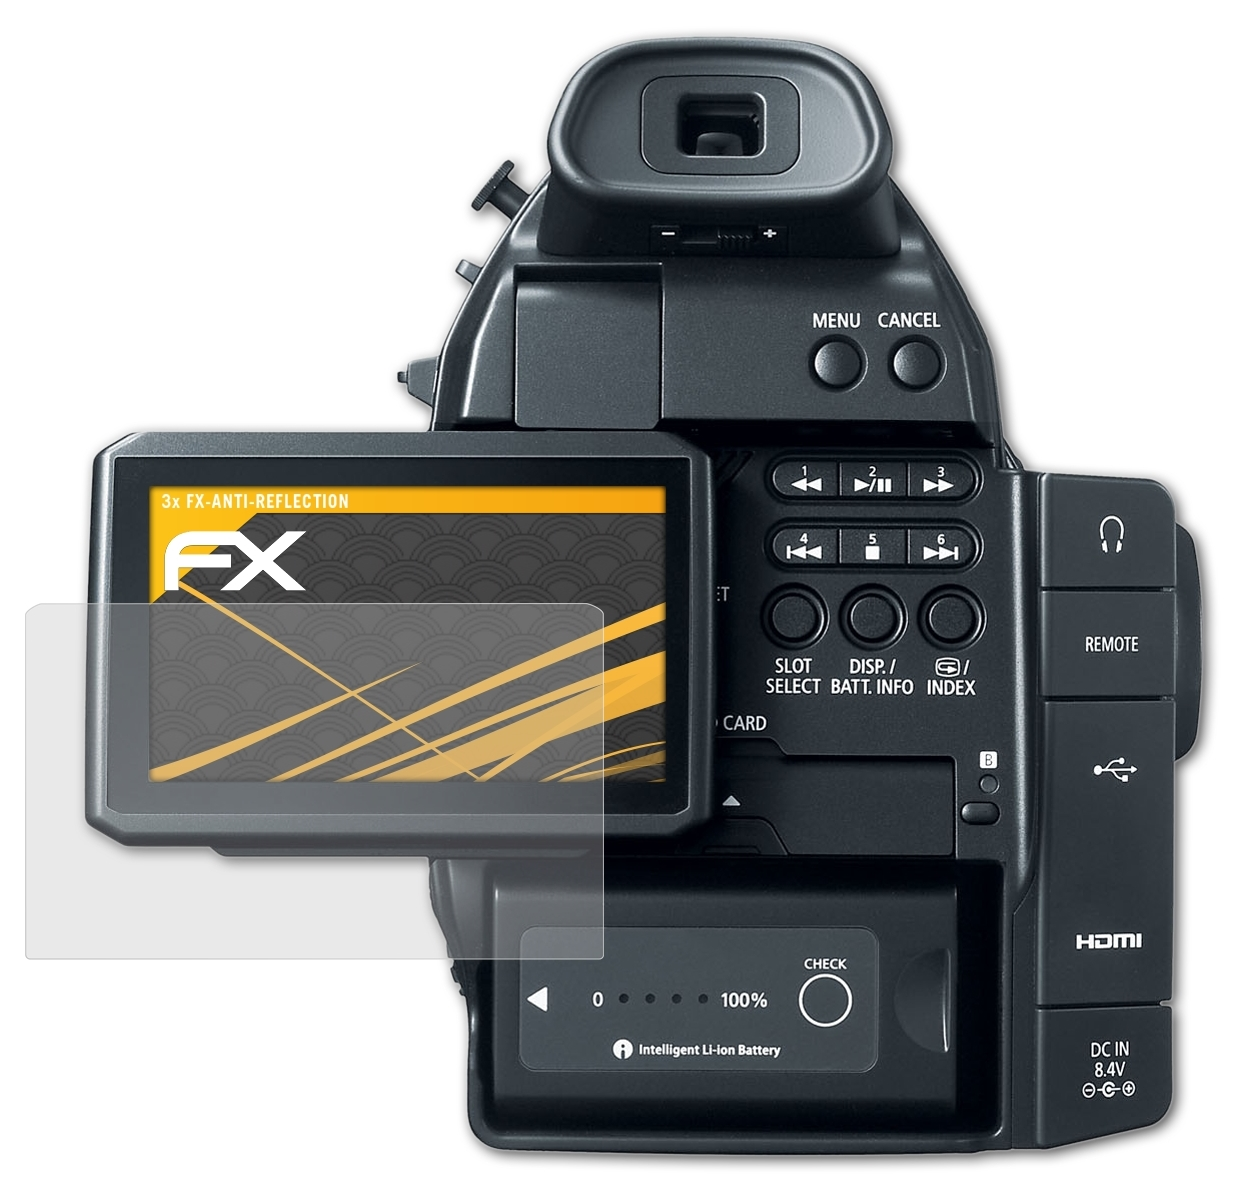 ATFOLIX C100) FX-Antireflex EOS Canon 3x Displayschutz(für